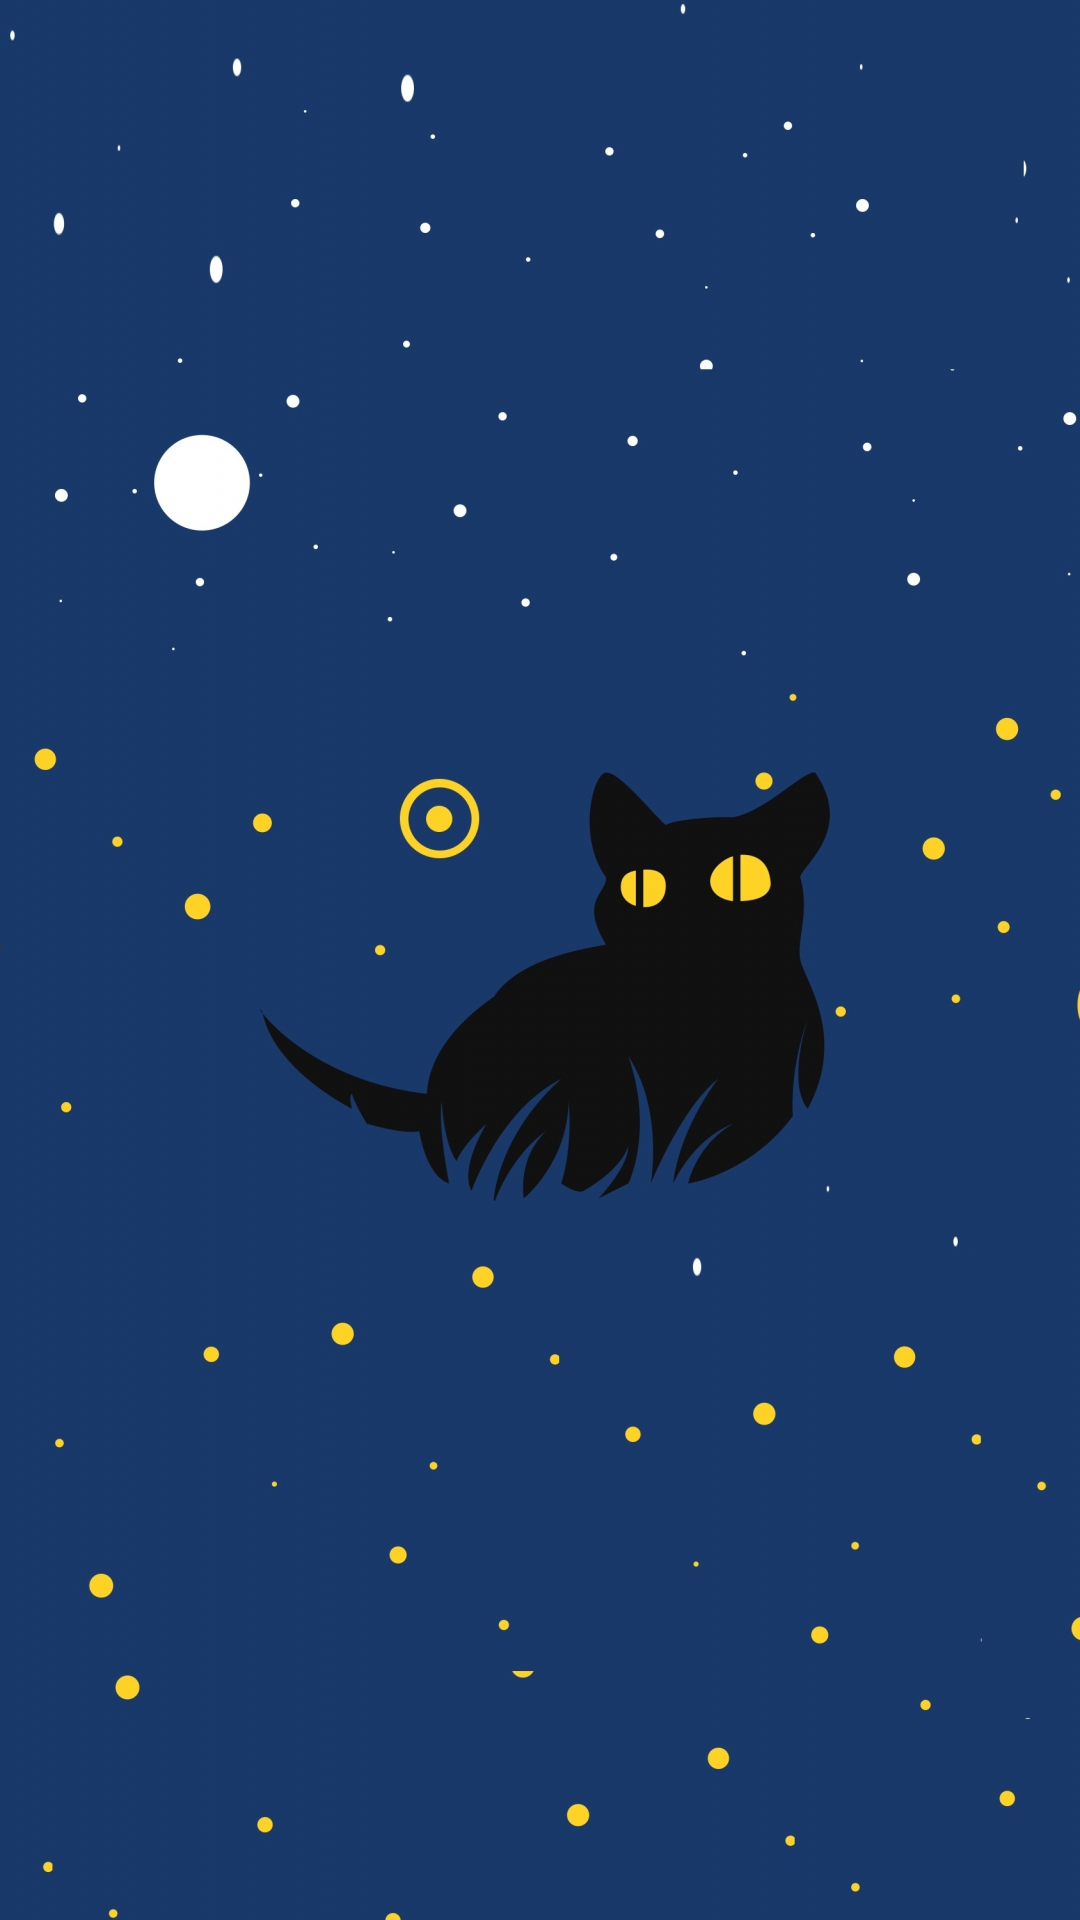 50 Black Cat iPhone Wallpaper  WallpaperSafari